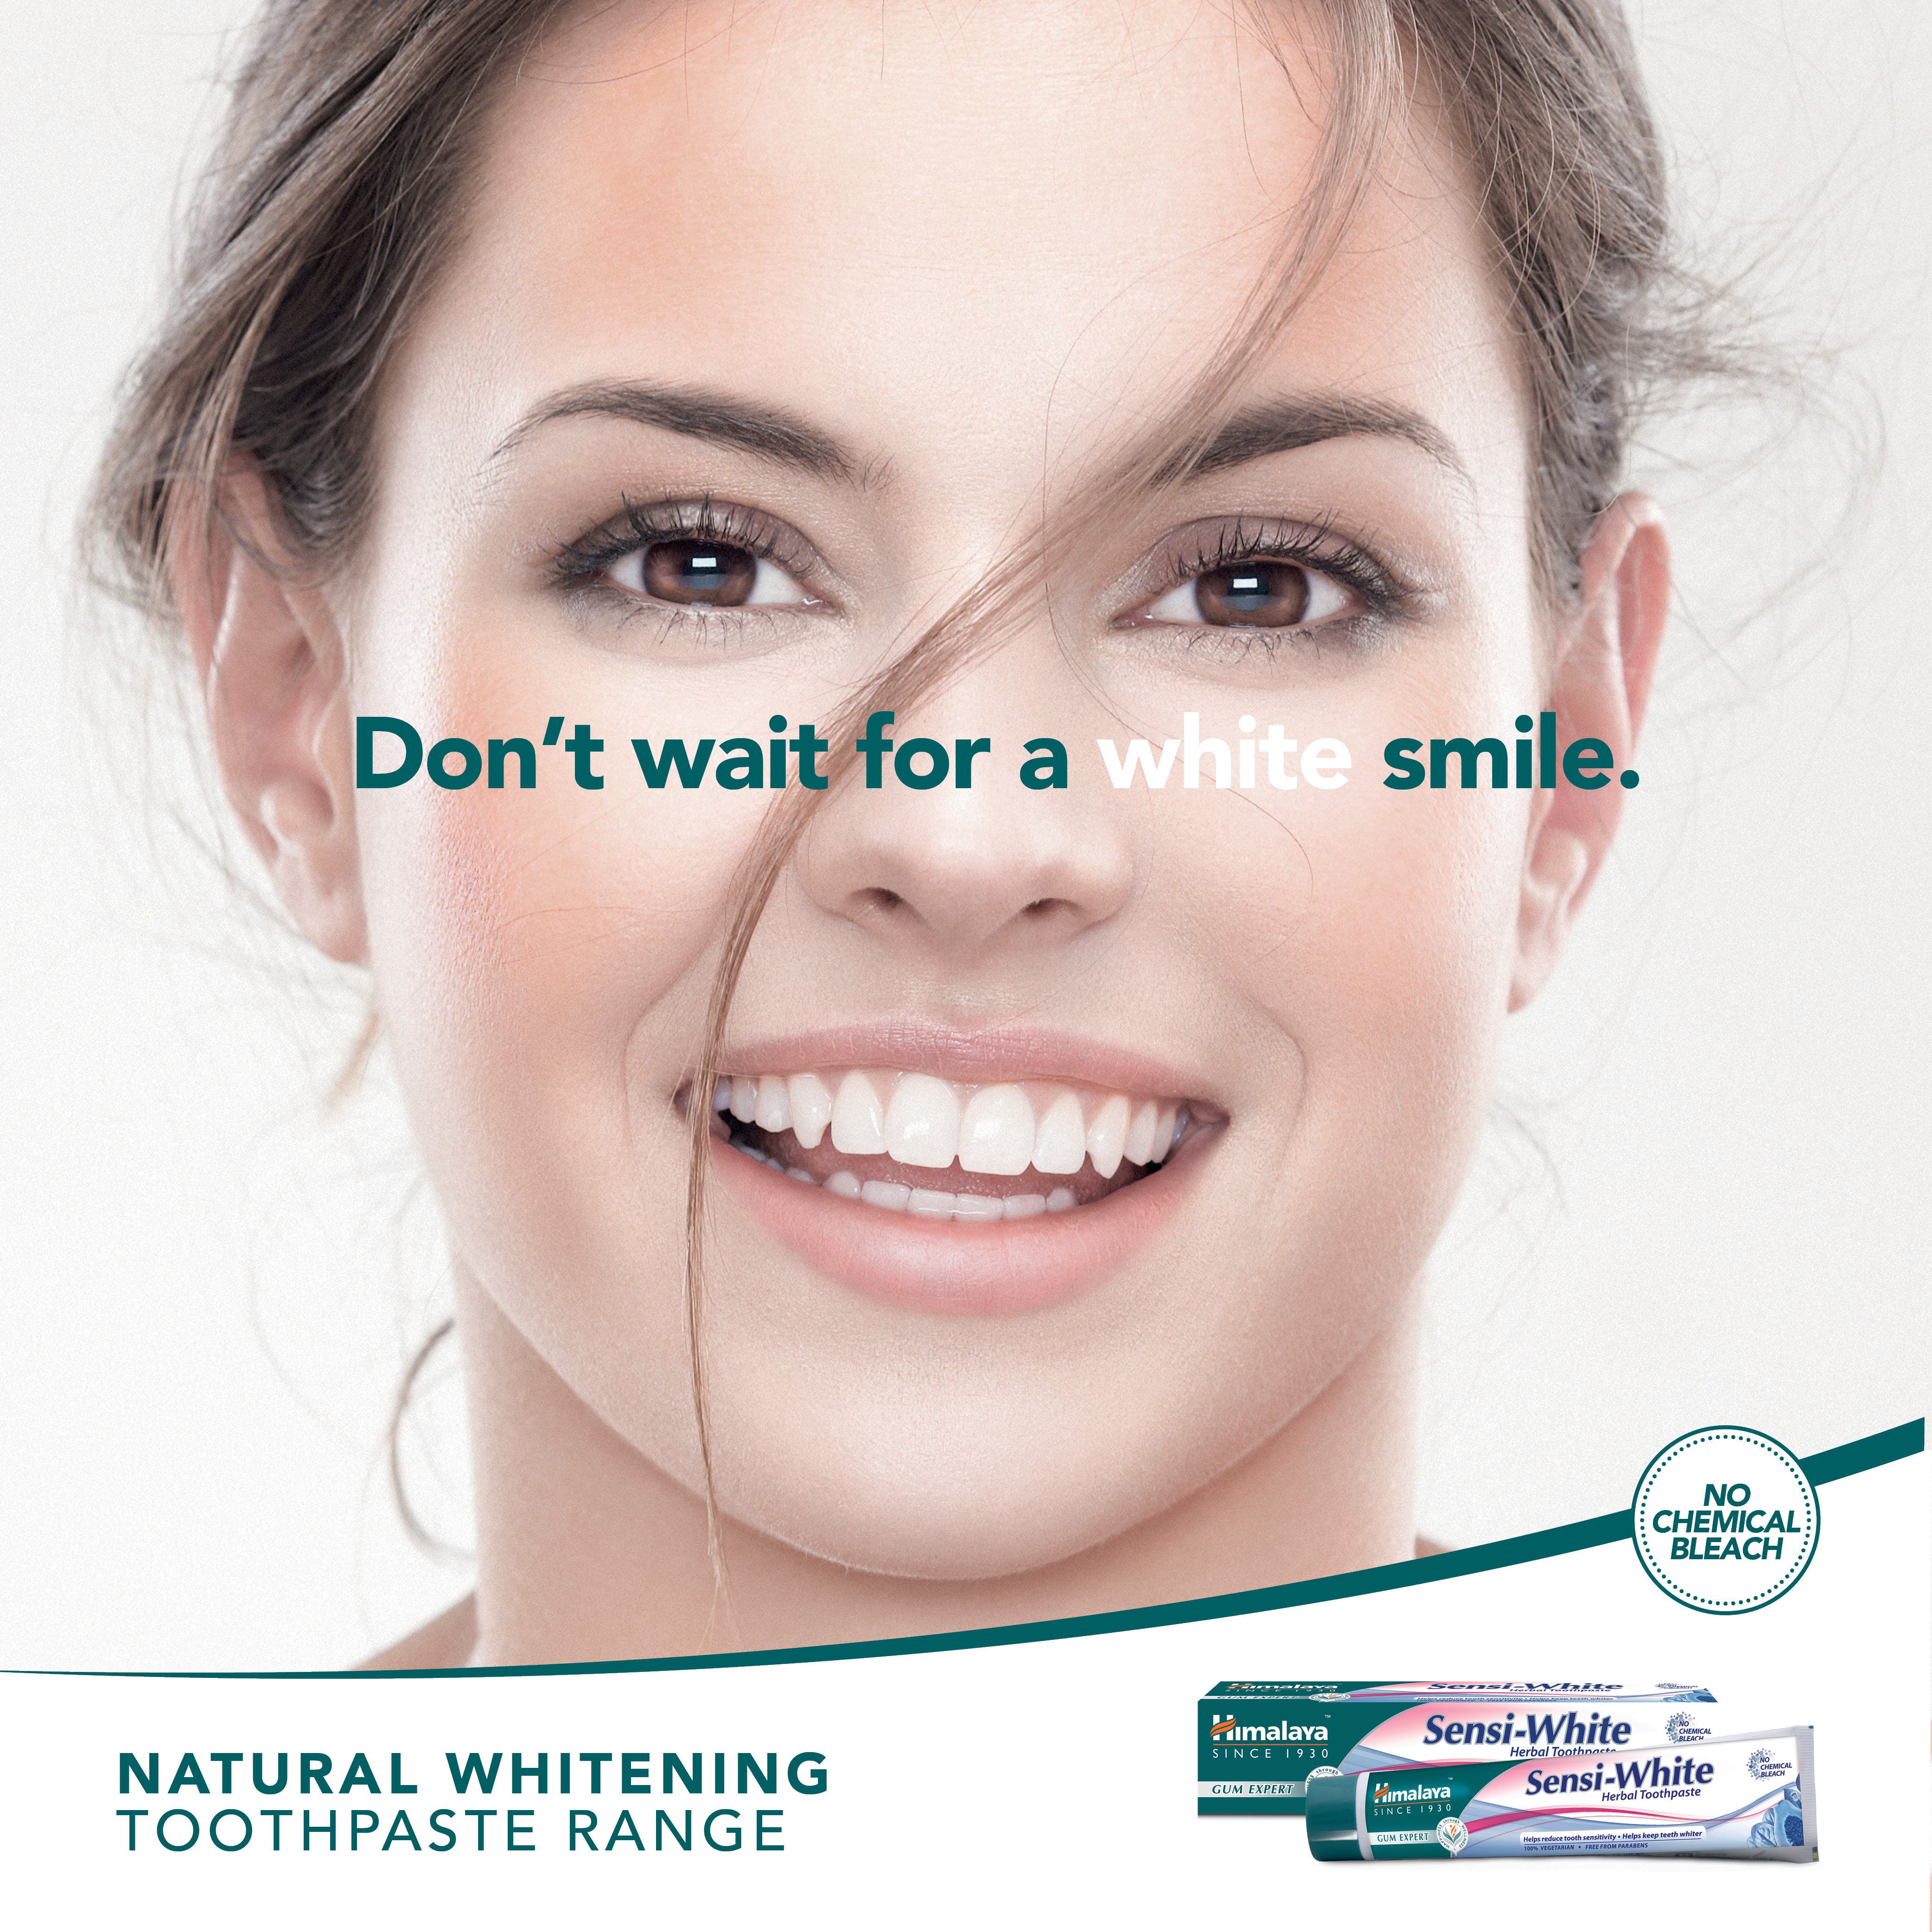 Himalaya Gum Expert Herbal Toothpaste - Sensi White - 75ml